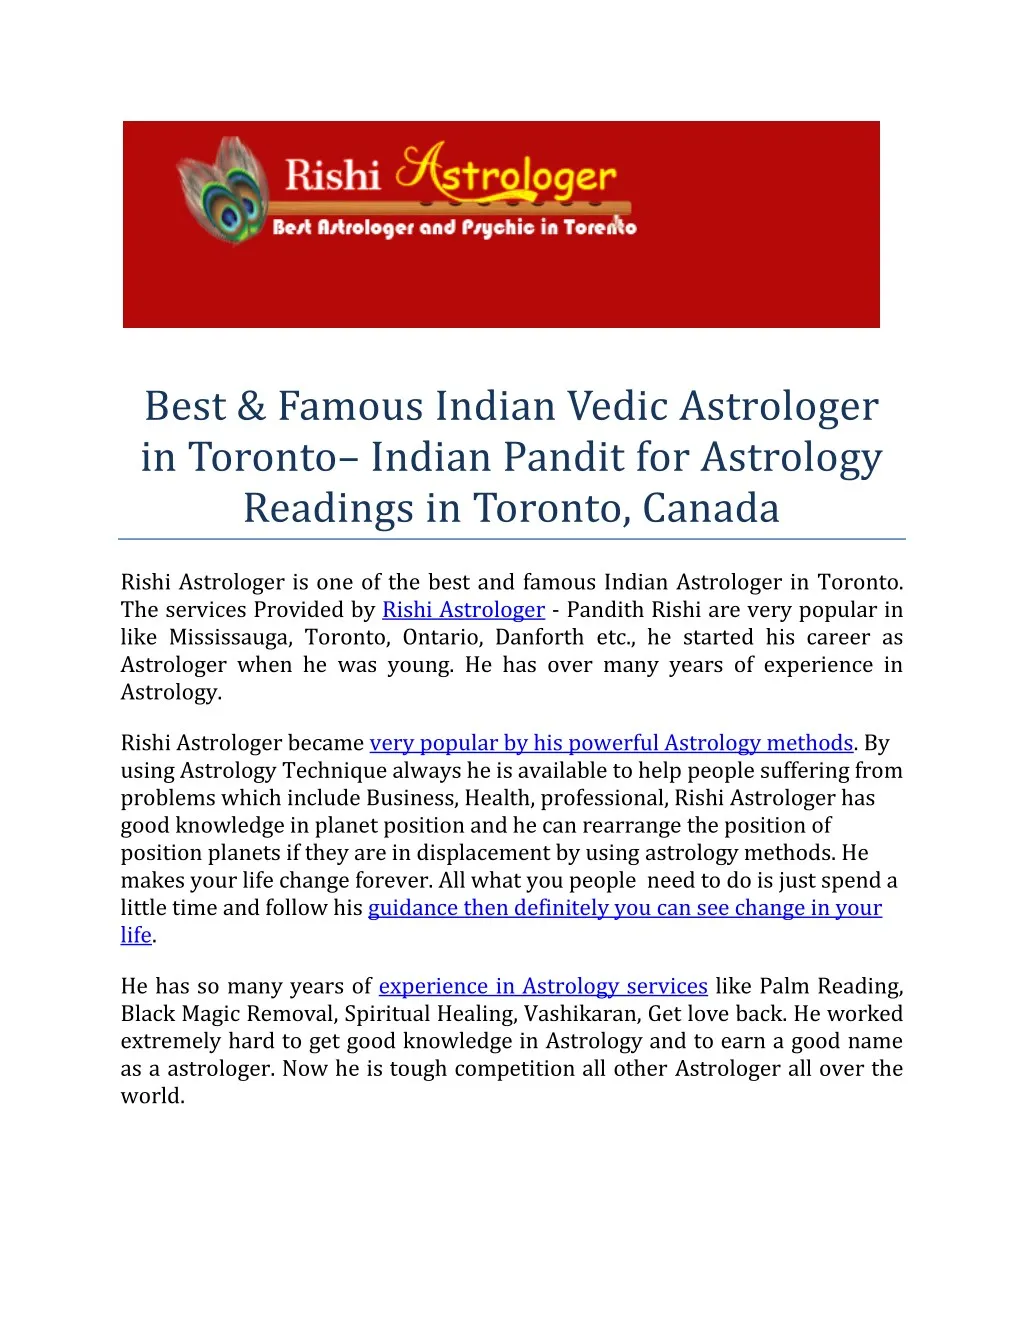 best famous indian vedic astrologer in toronto